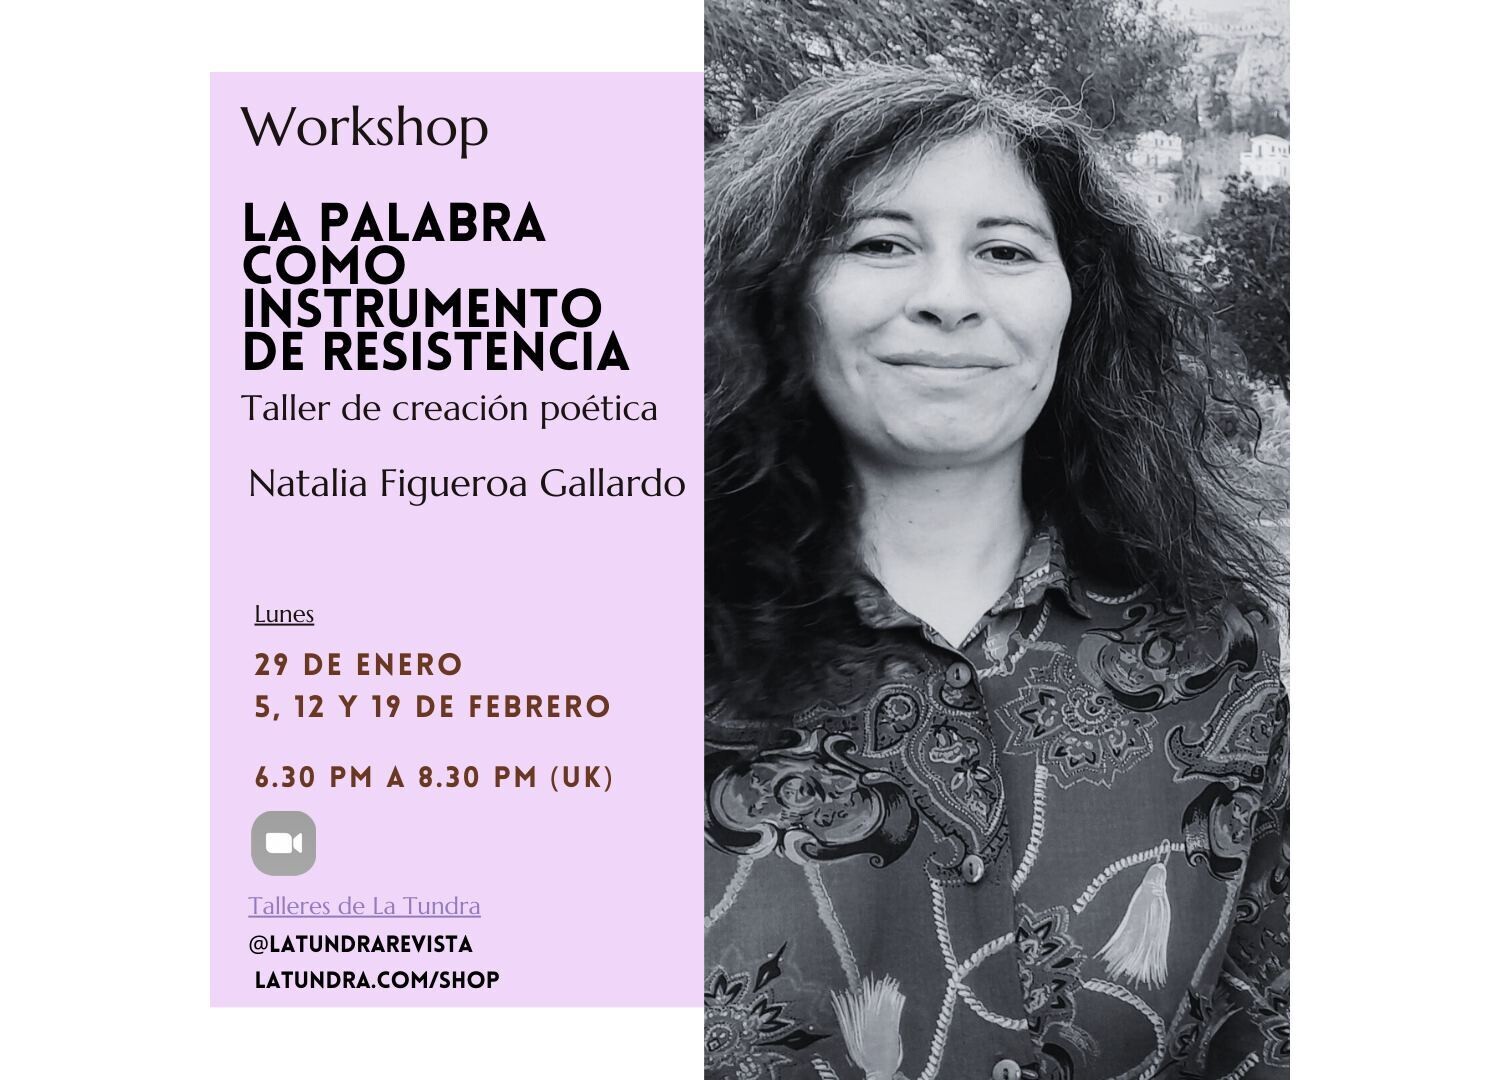 La palabra como instrumento de resistencia - Taller con Natalia Figueroa Gallardo